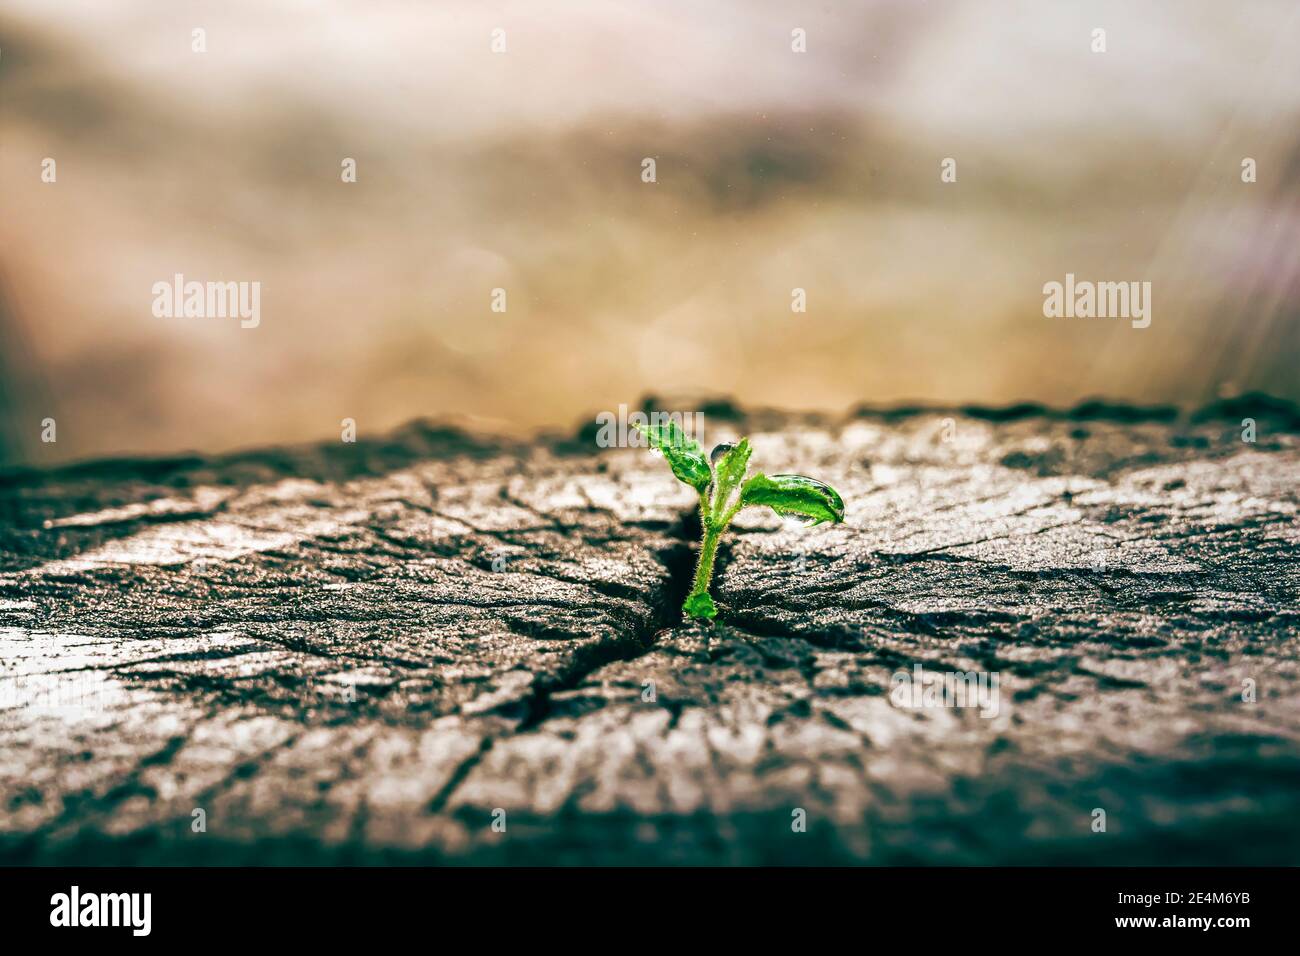 Nueva vida fotografías e imágenes de alta resolución - Alamy